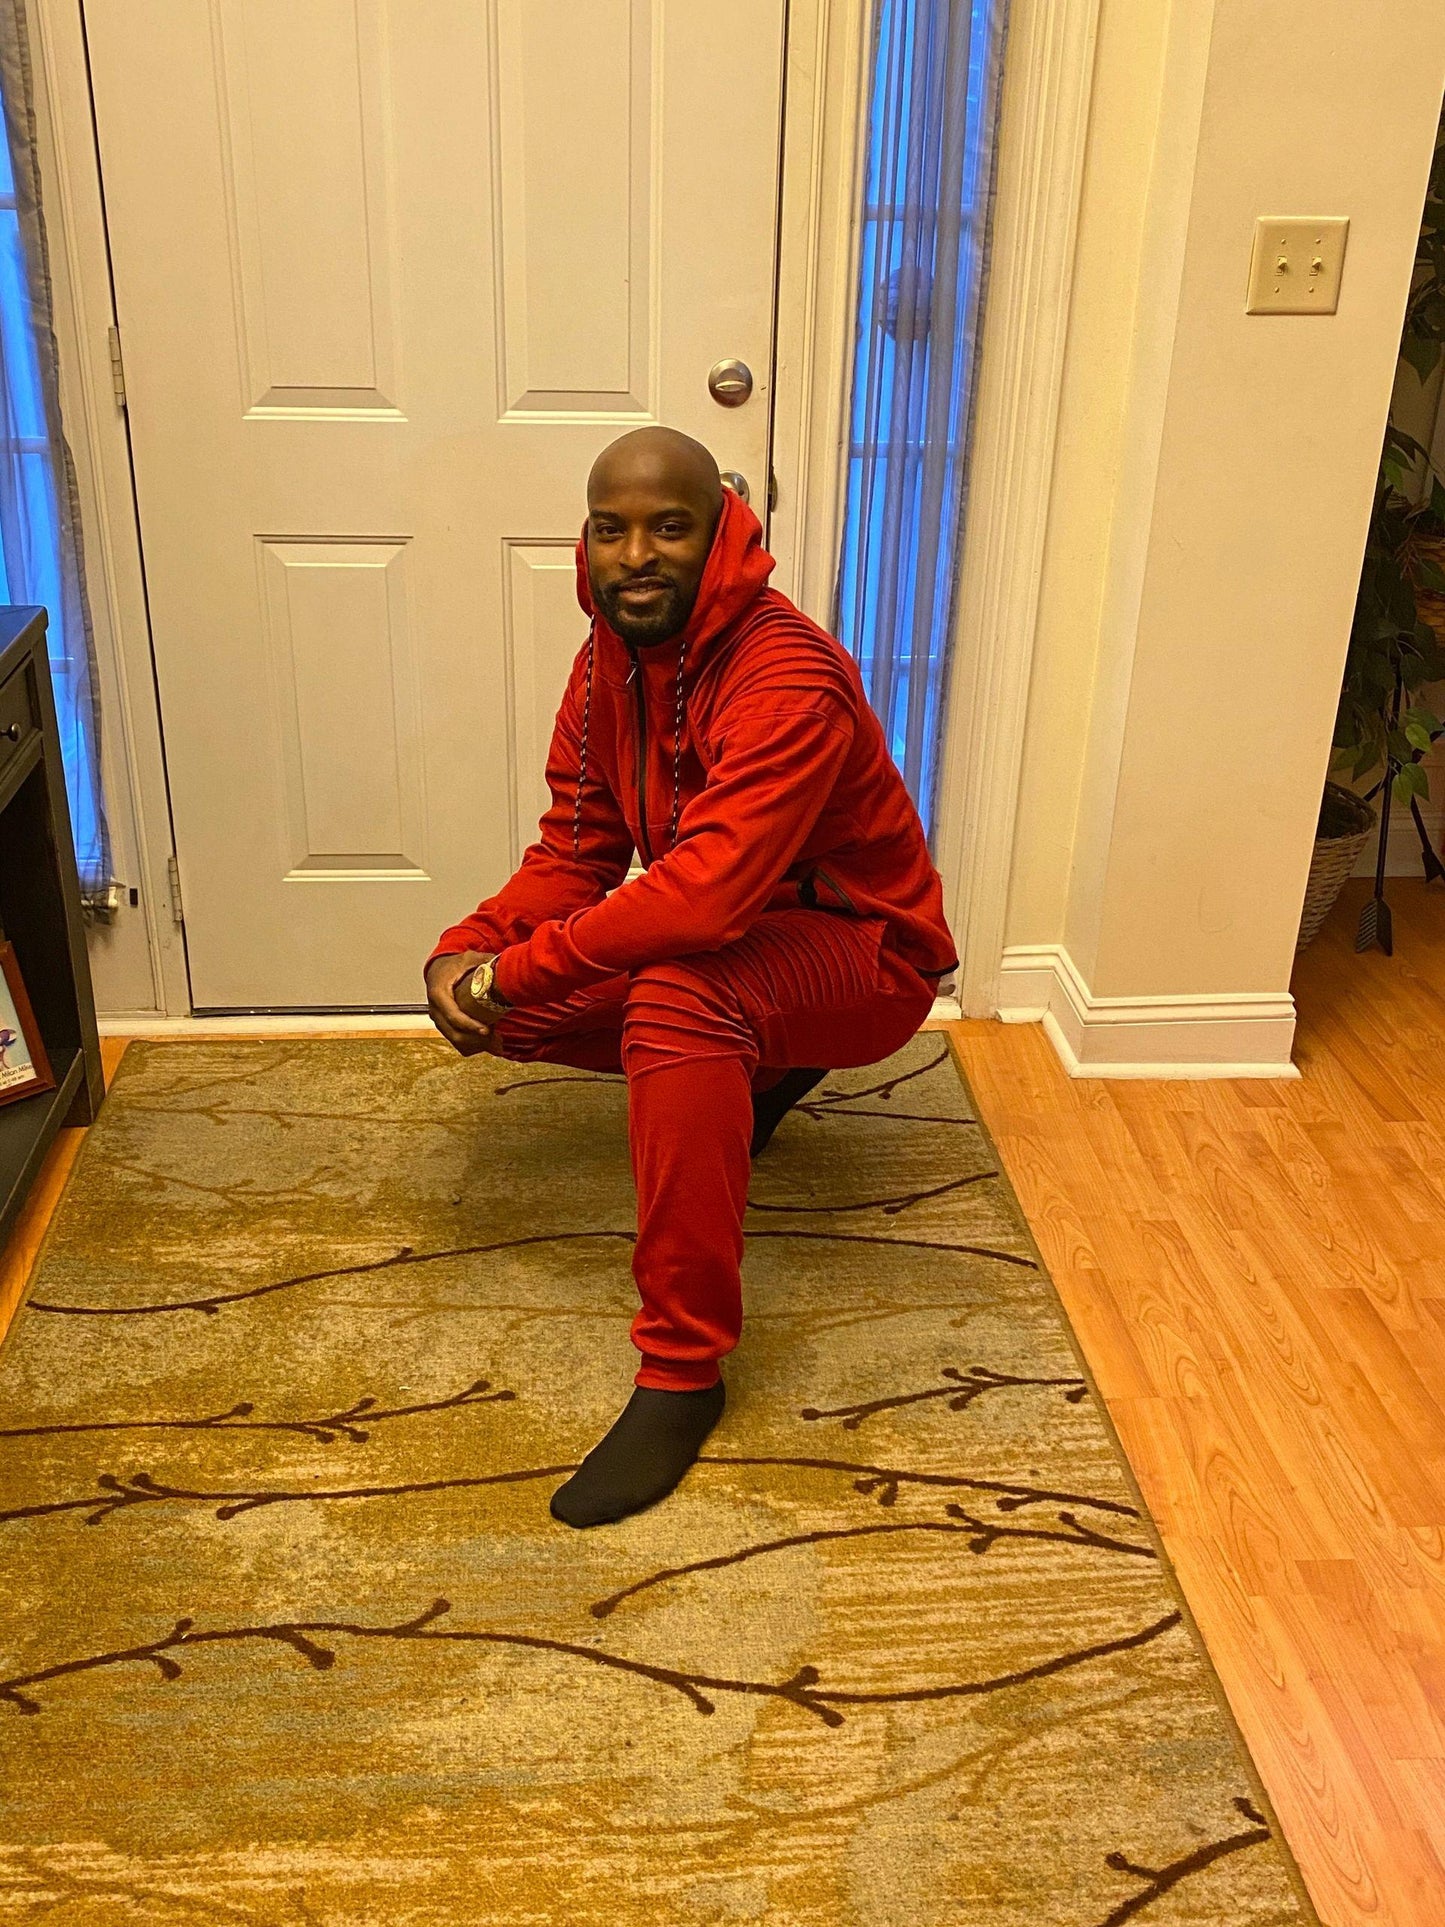 Douglas Men’s Track Suit Red